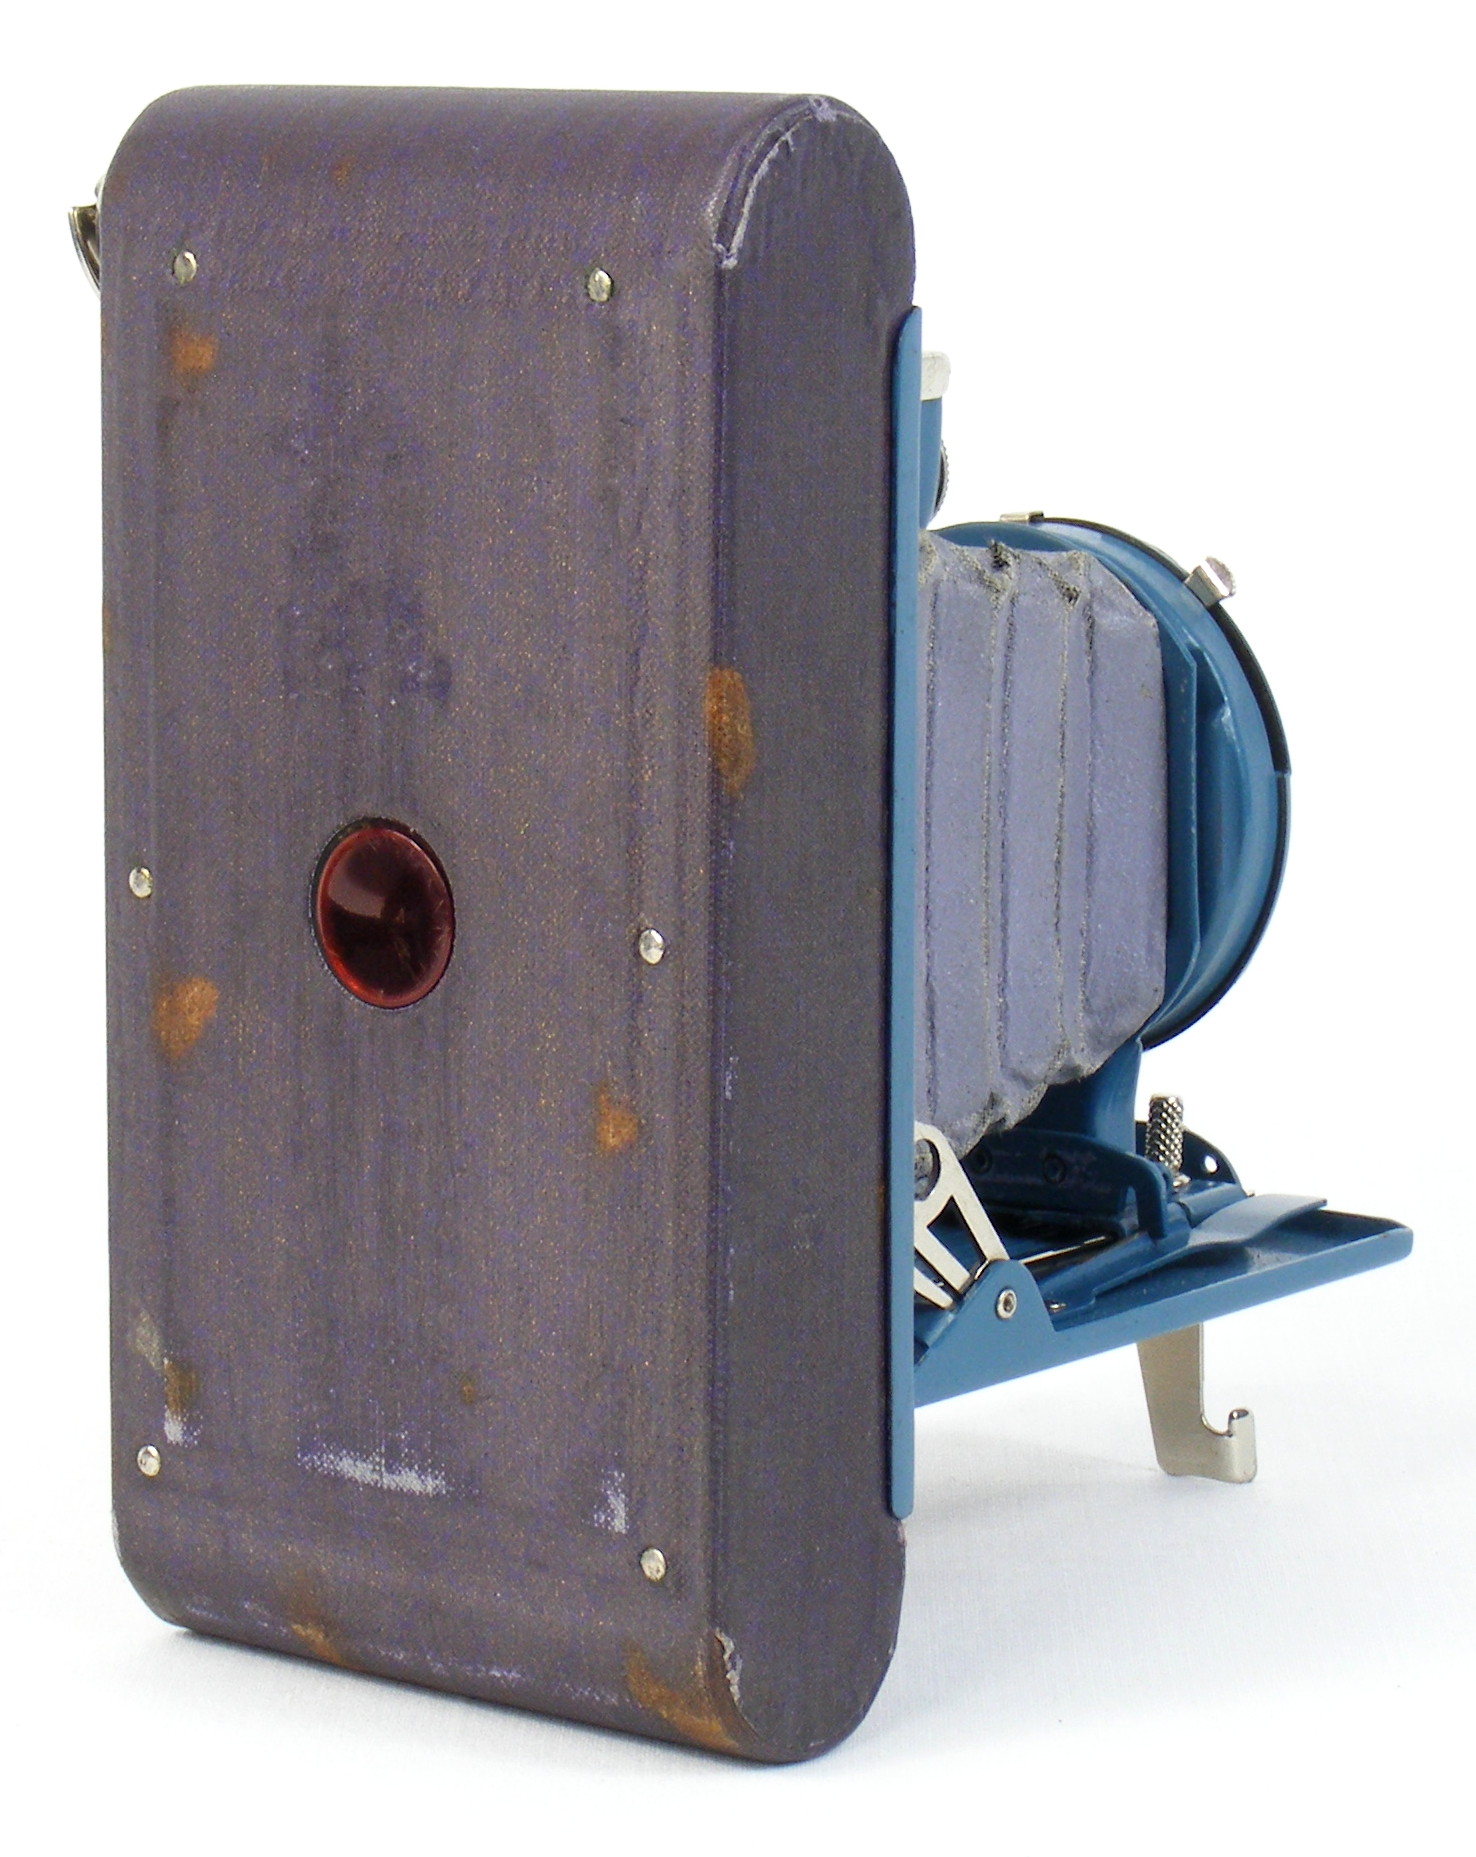 Image of Kodak Petite folding camera (rear view)